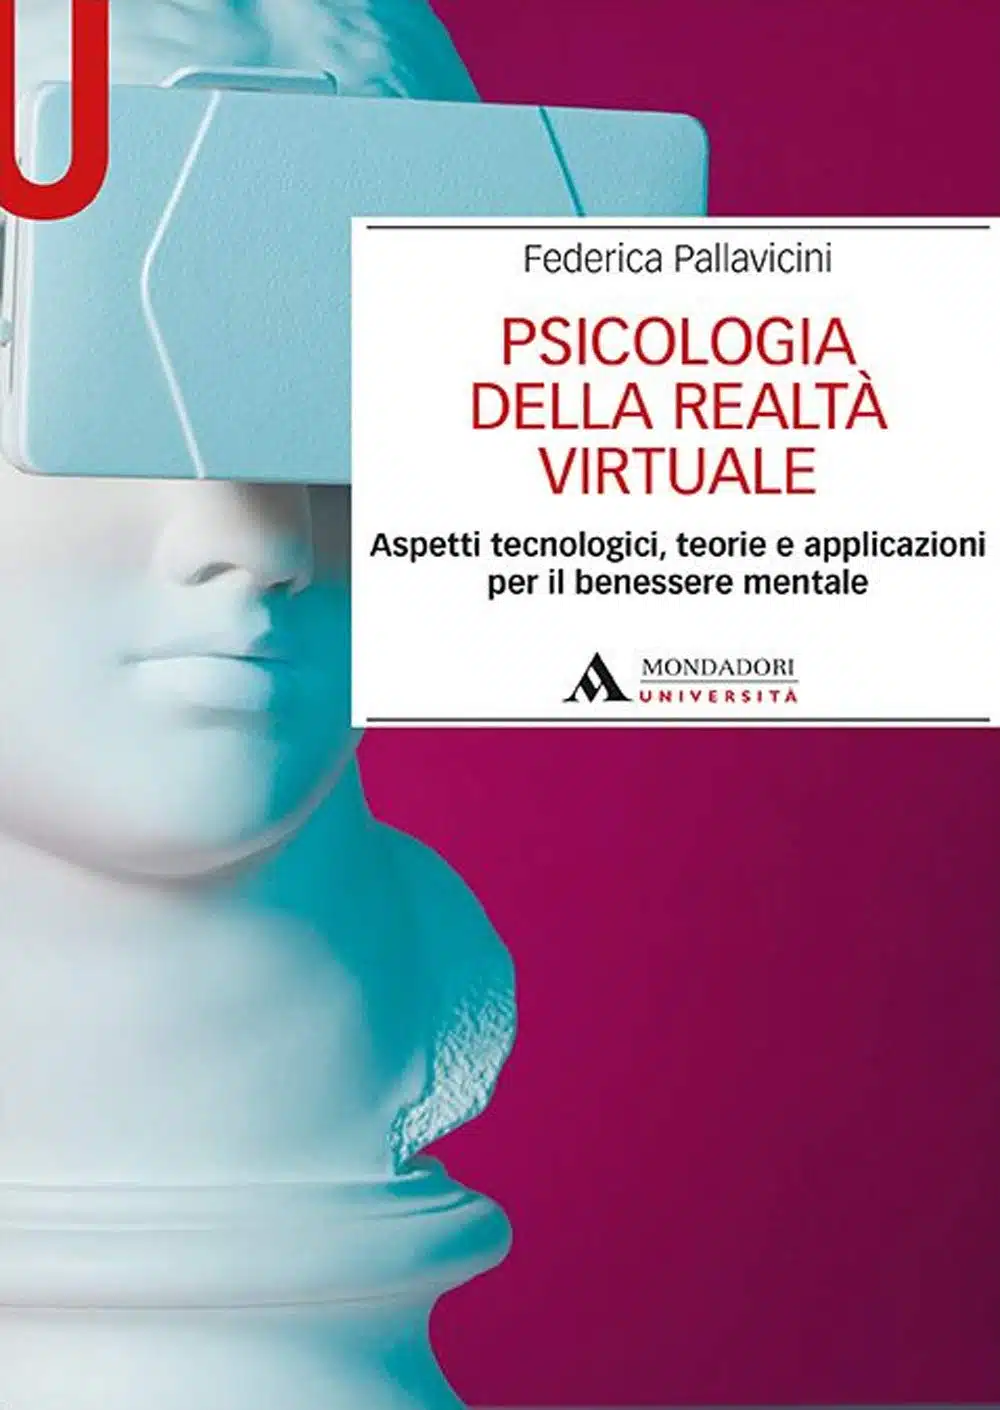 Psicologia della realtà virtuale (2020) Pallavicini - Recensione e intervista